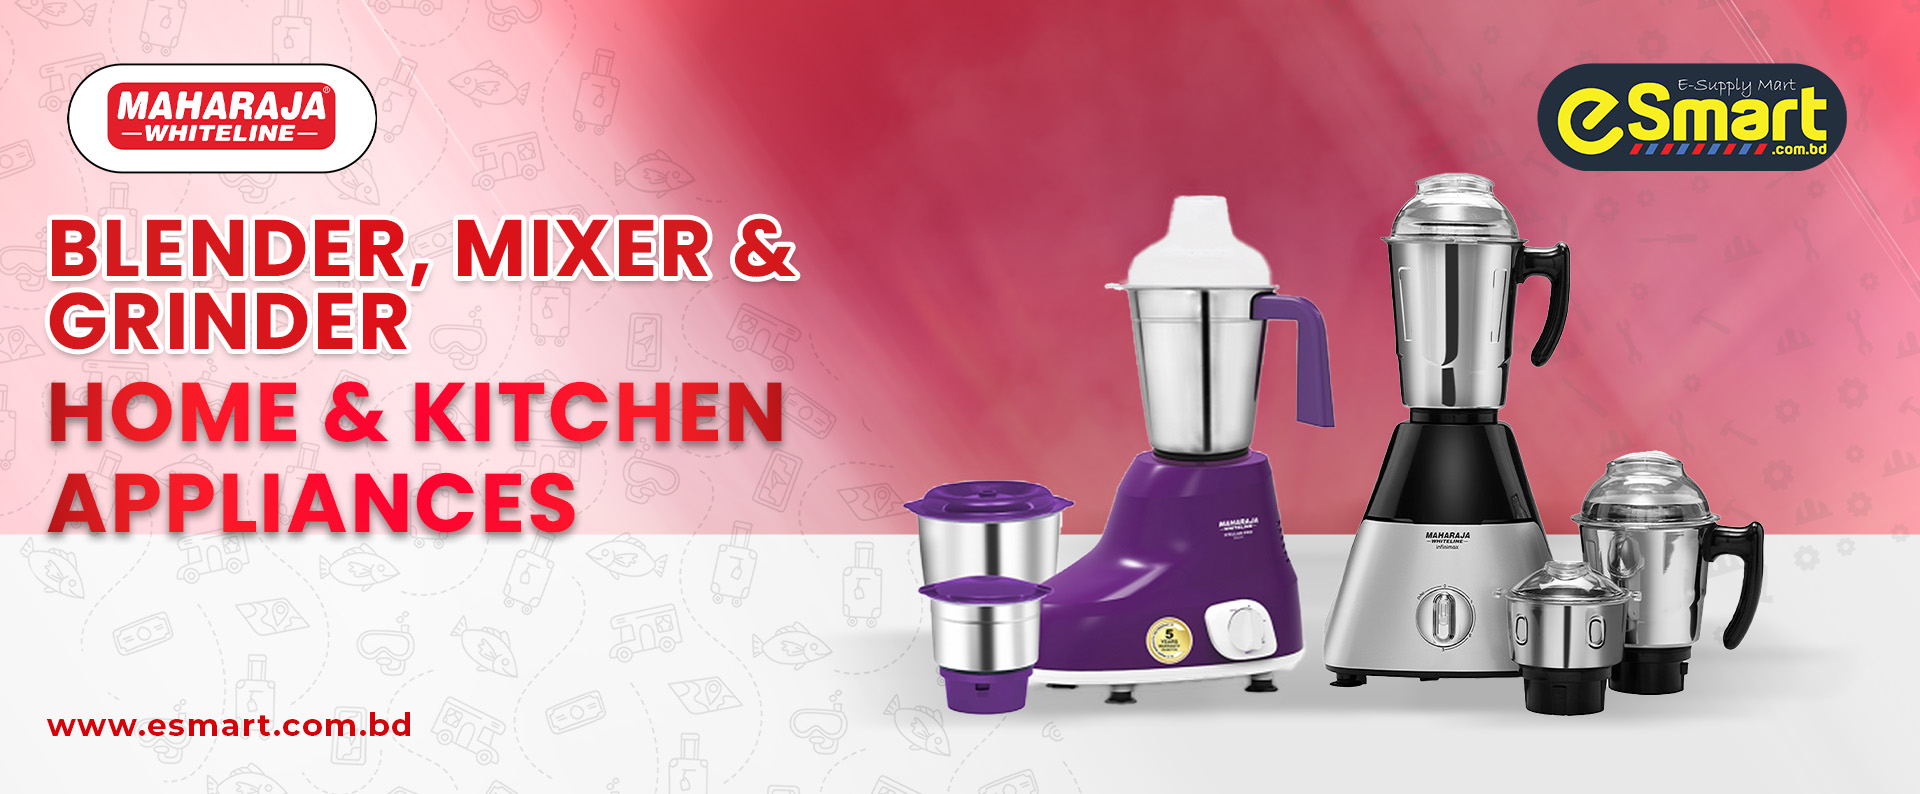 Catagori Bunnr Blender & Mixer Maharaja X